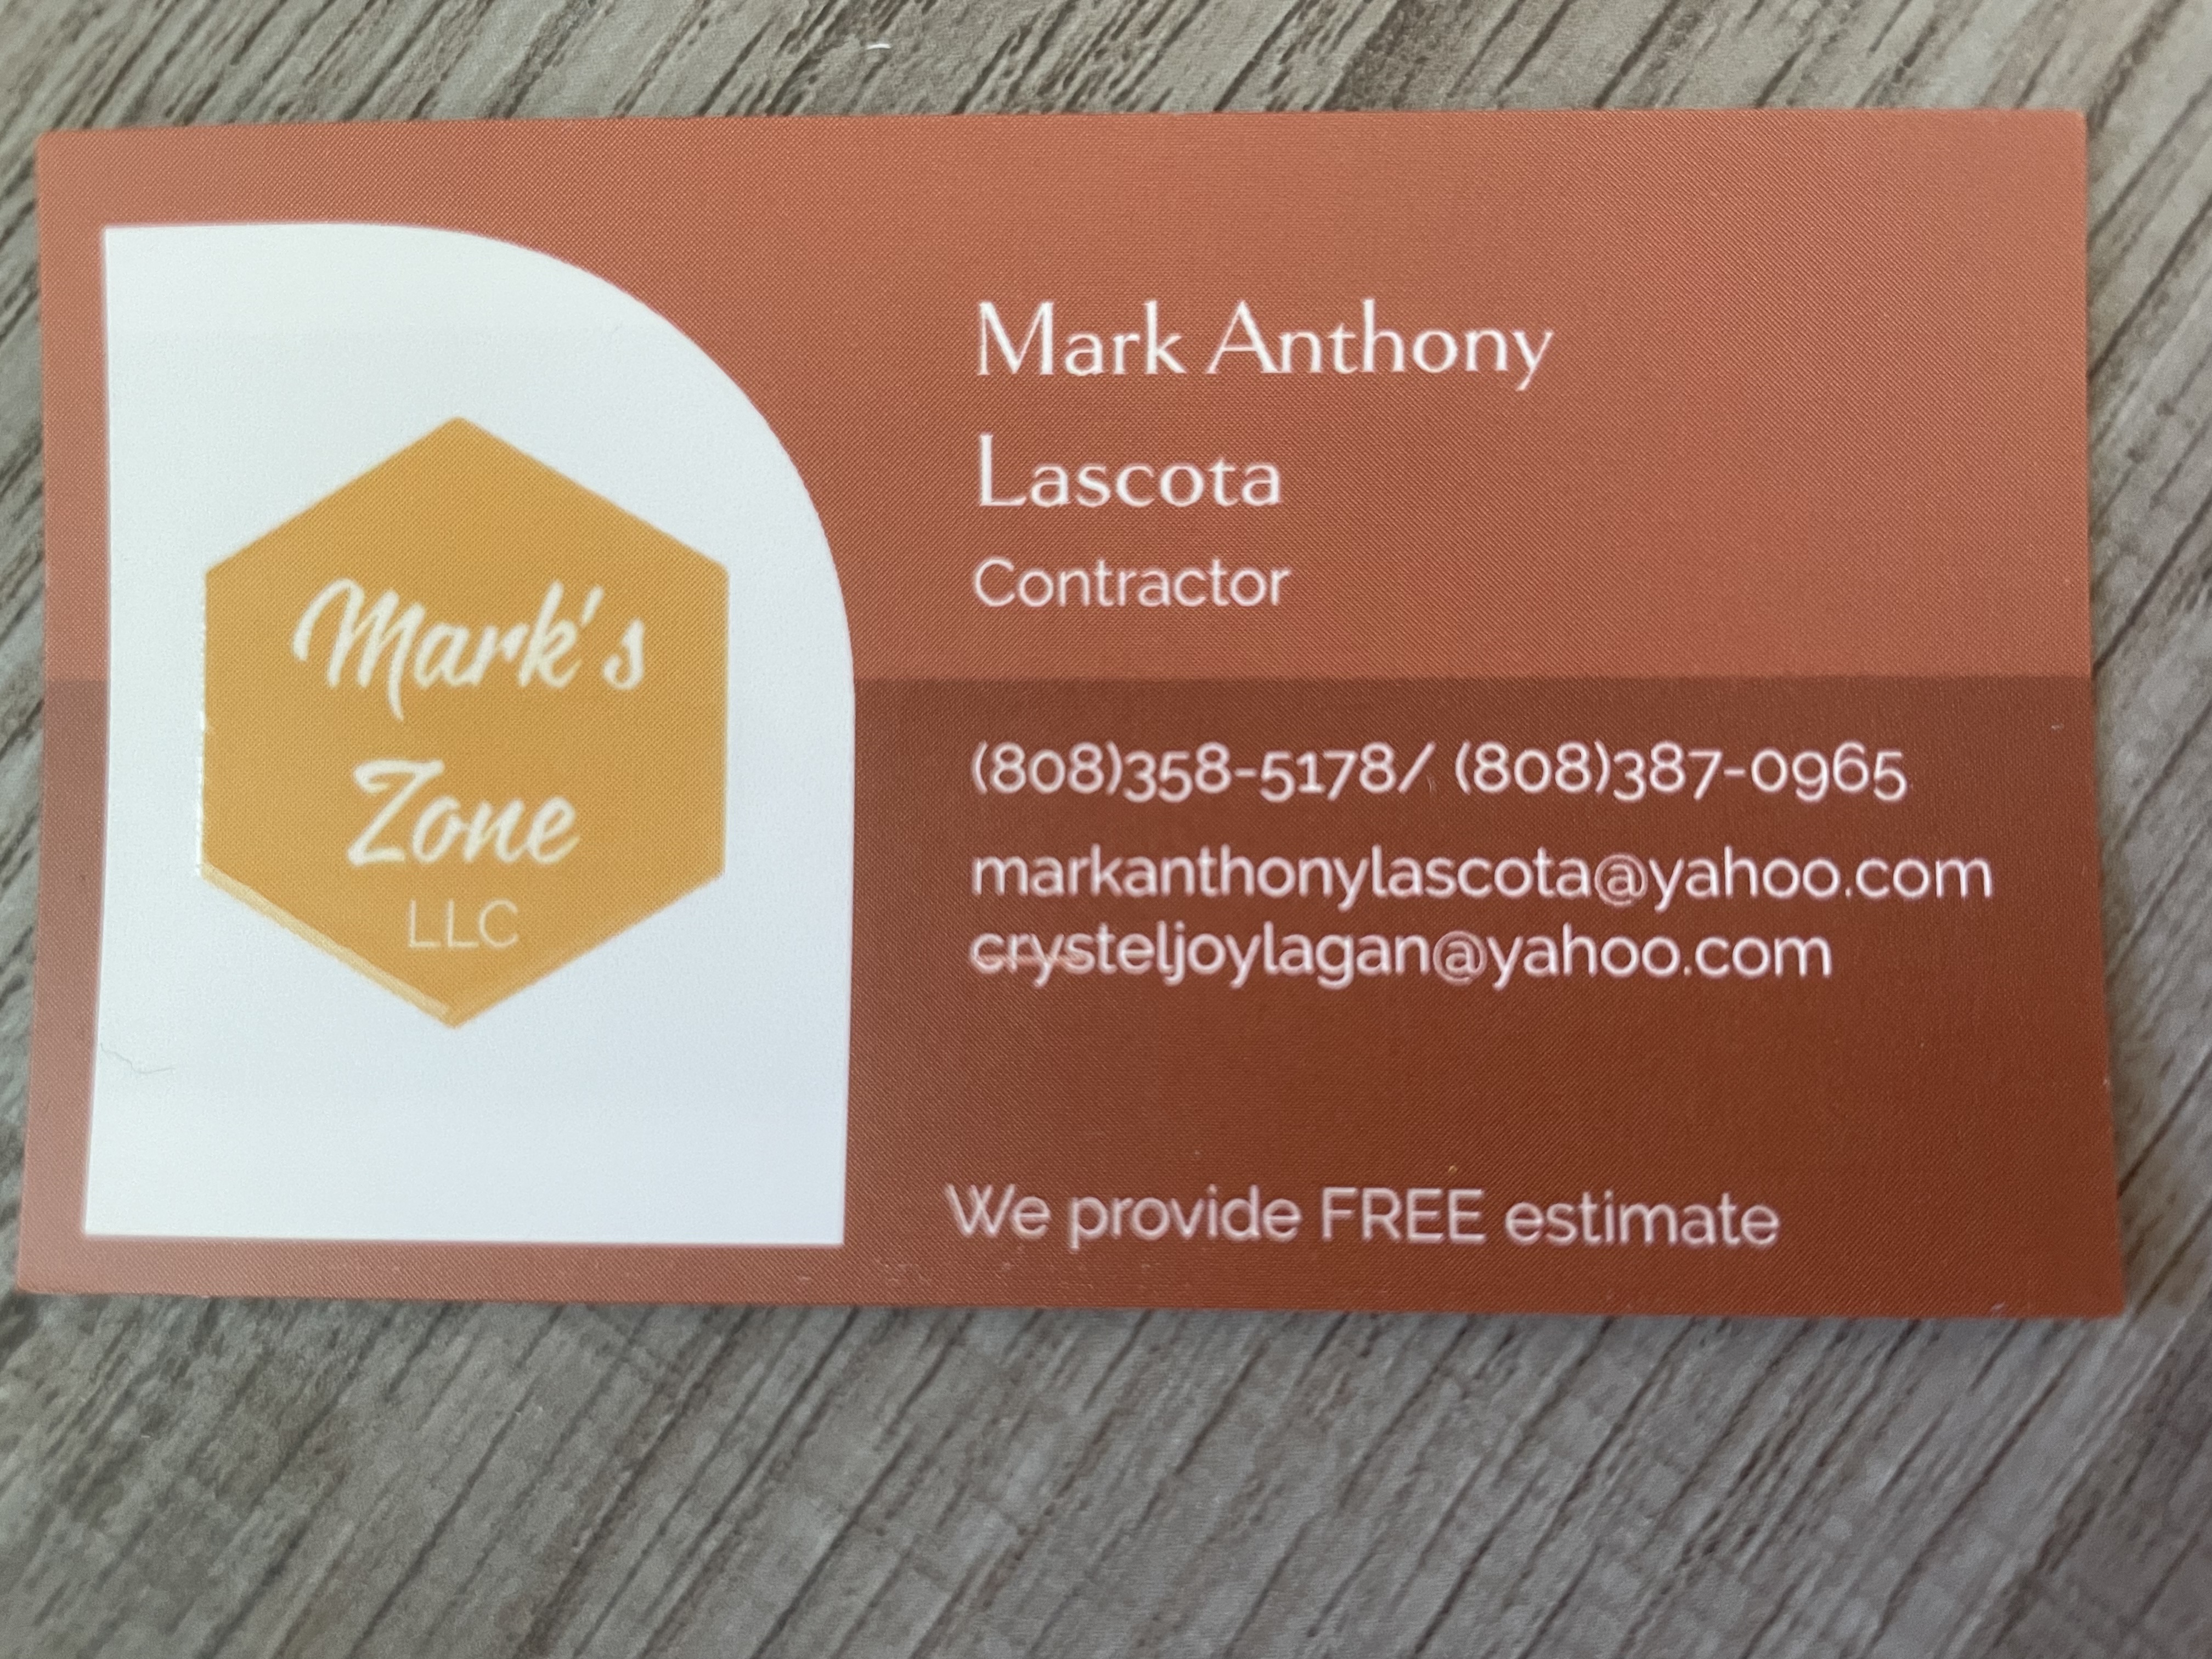 Mark's Zone, LLC Logo